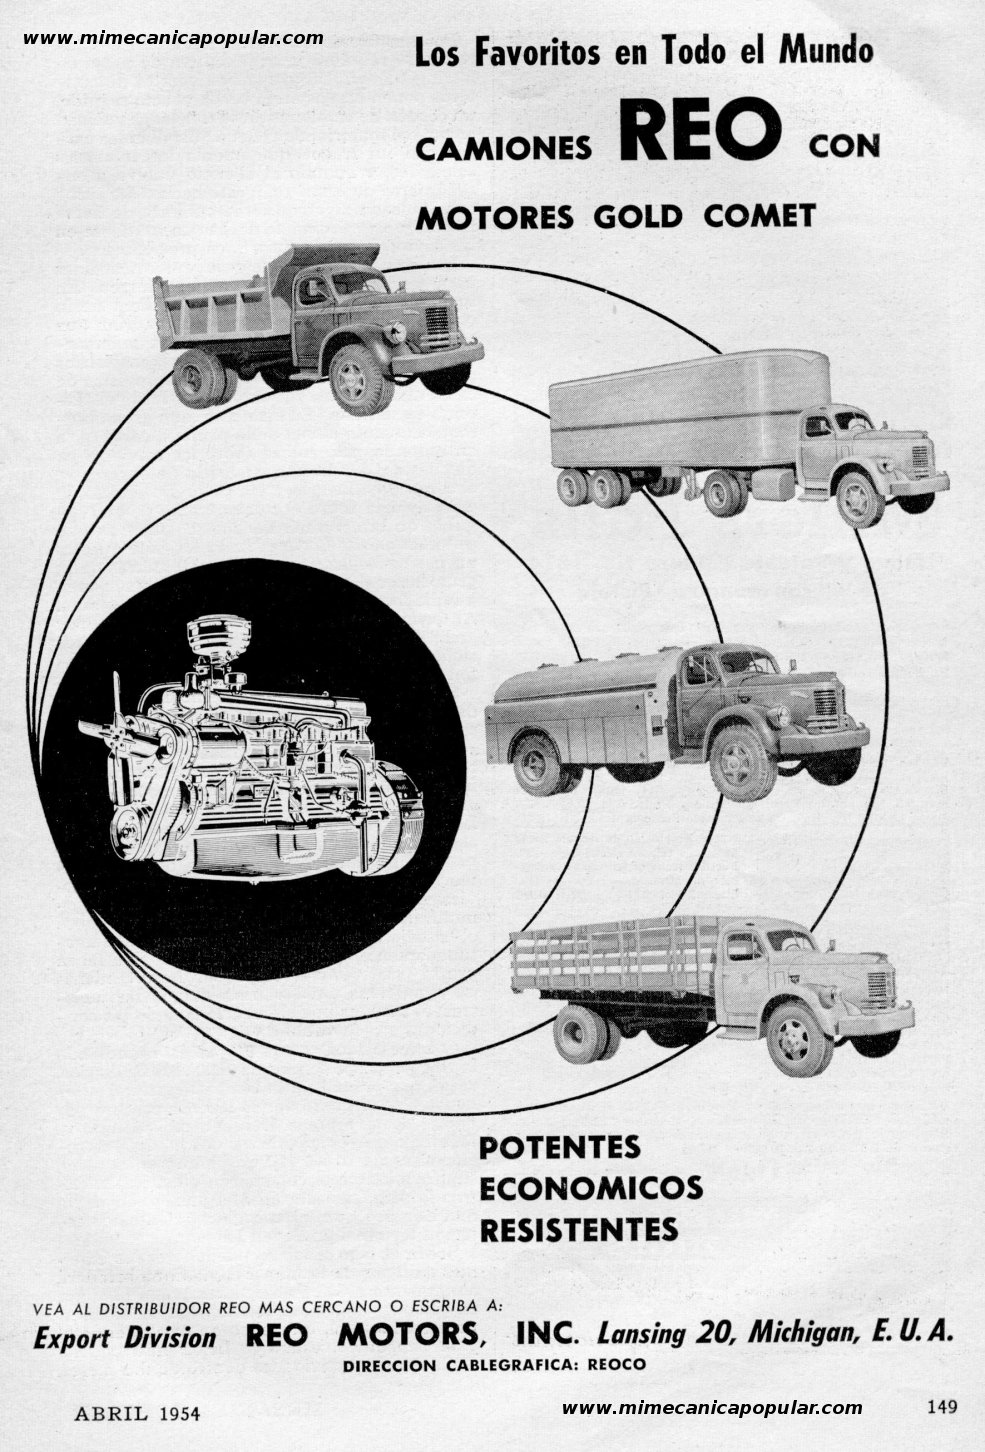 Publicidad - Reo Motors, Inc. - Abril 1954